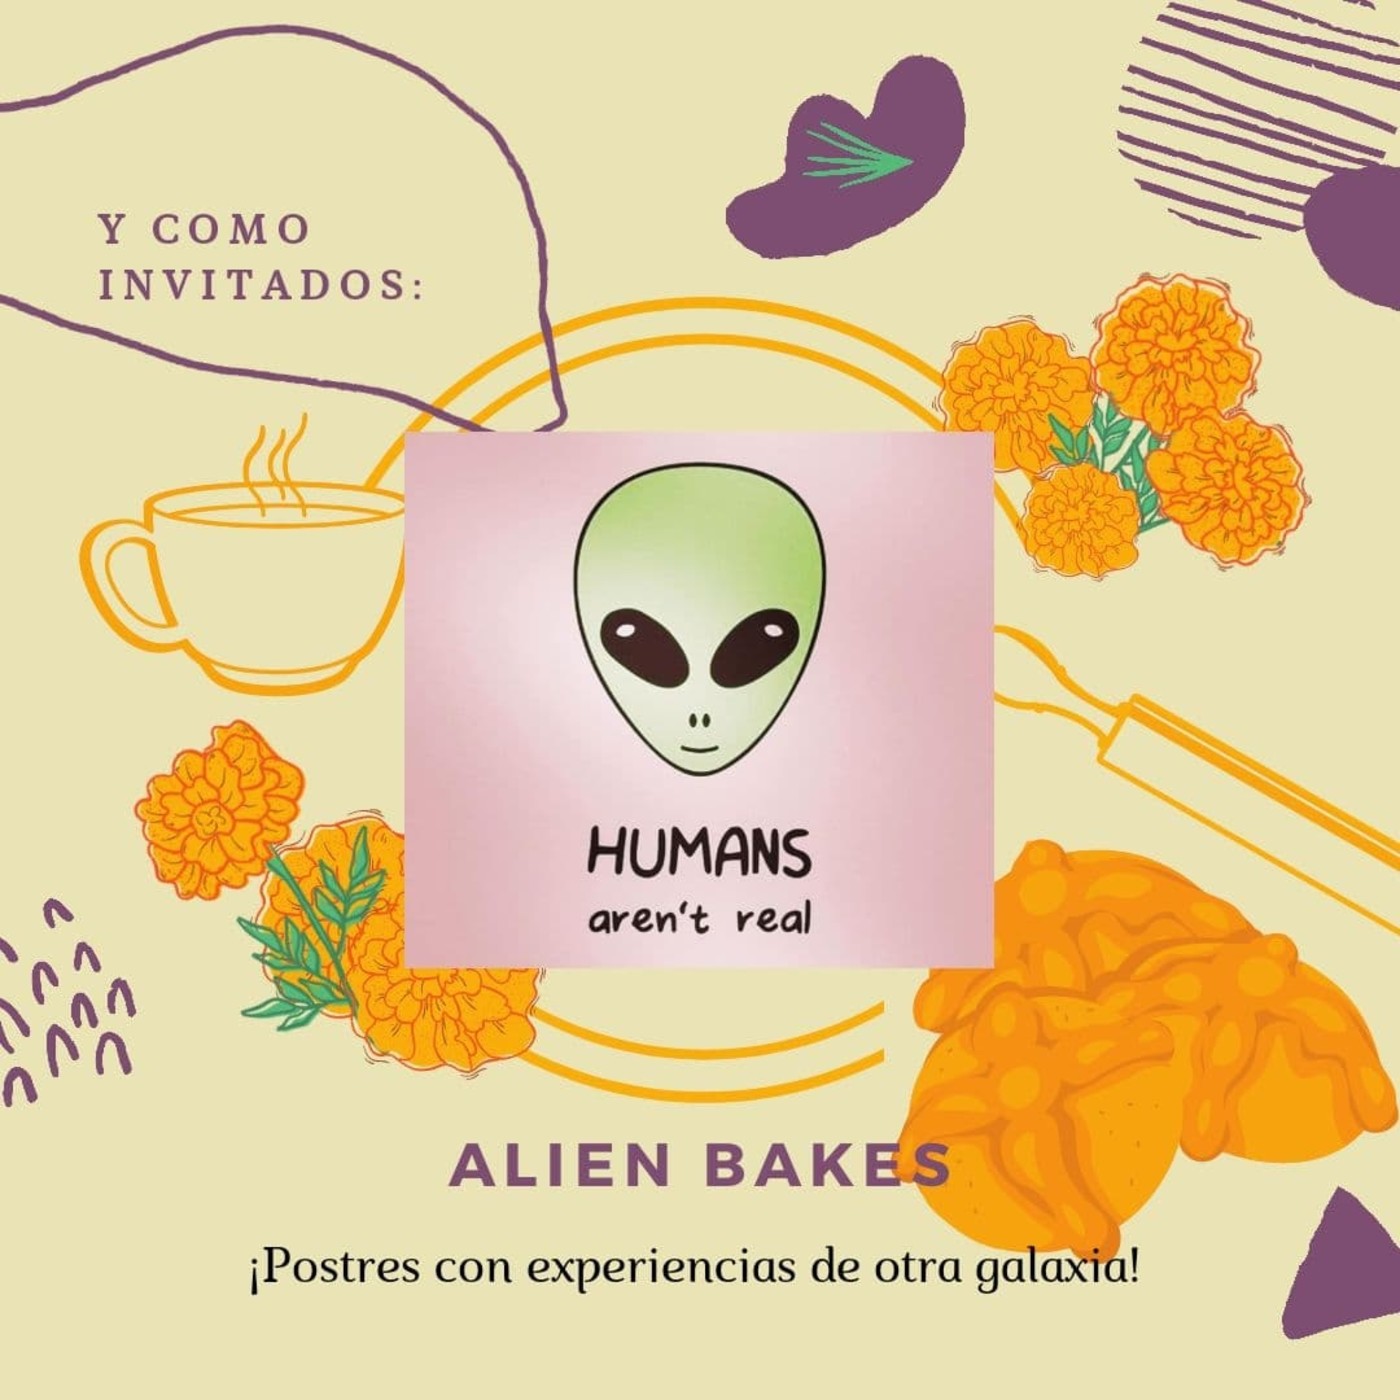 CD Ep. 20 Lado A - Alien Bakes (Entrevista) Especial Día de Muertos y Halloween